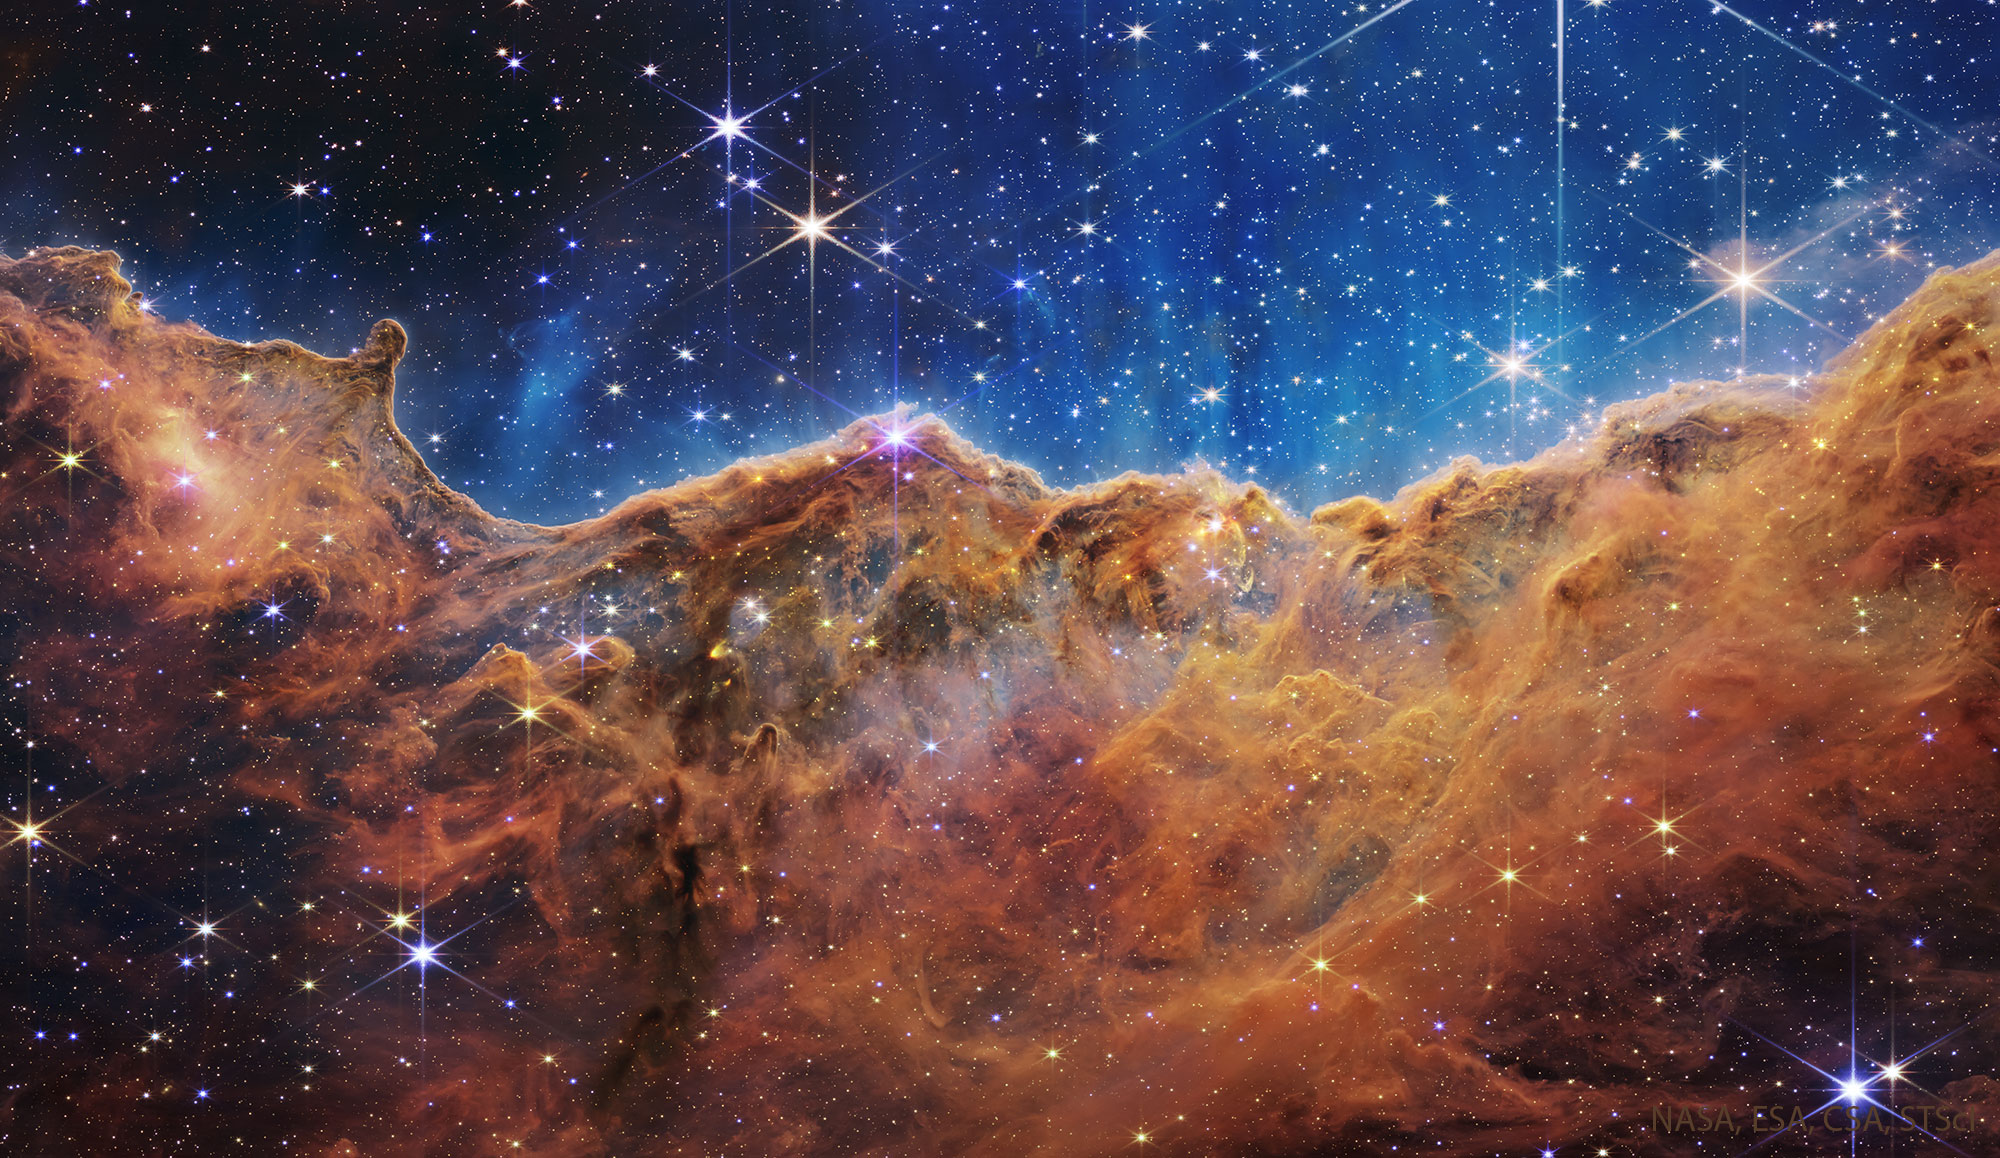 Cosmic slopes in full grandeur.  Webb revealed regions that Hubble had not seen before